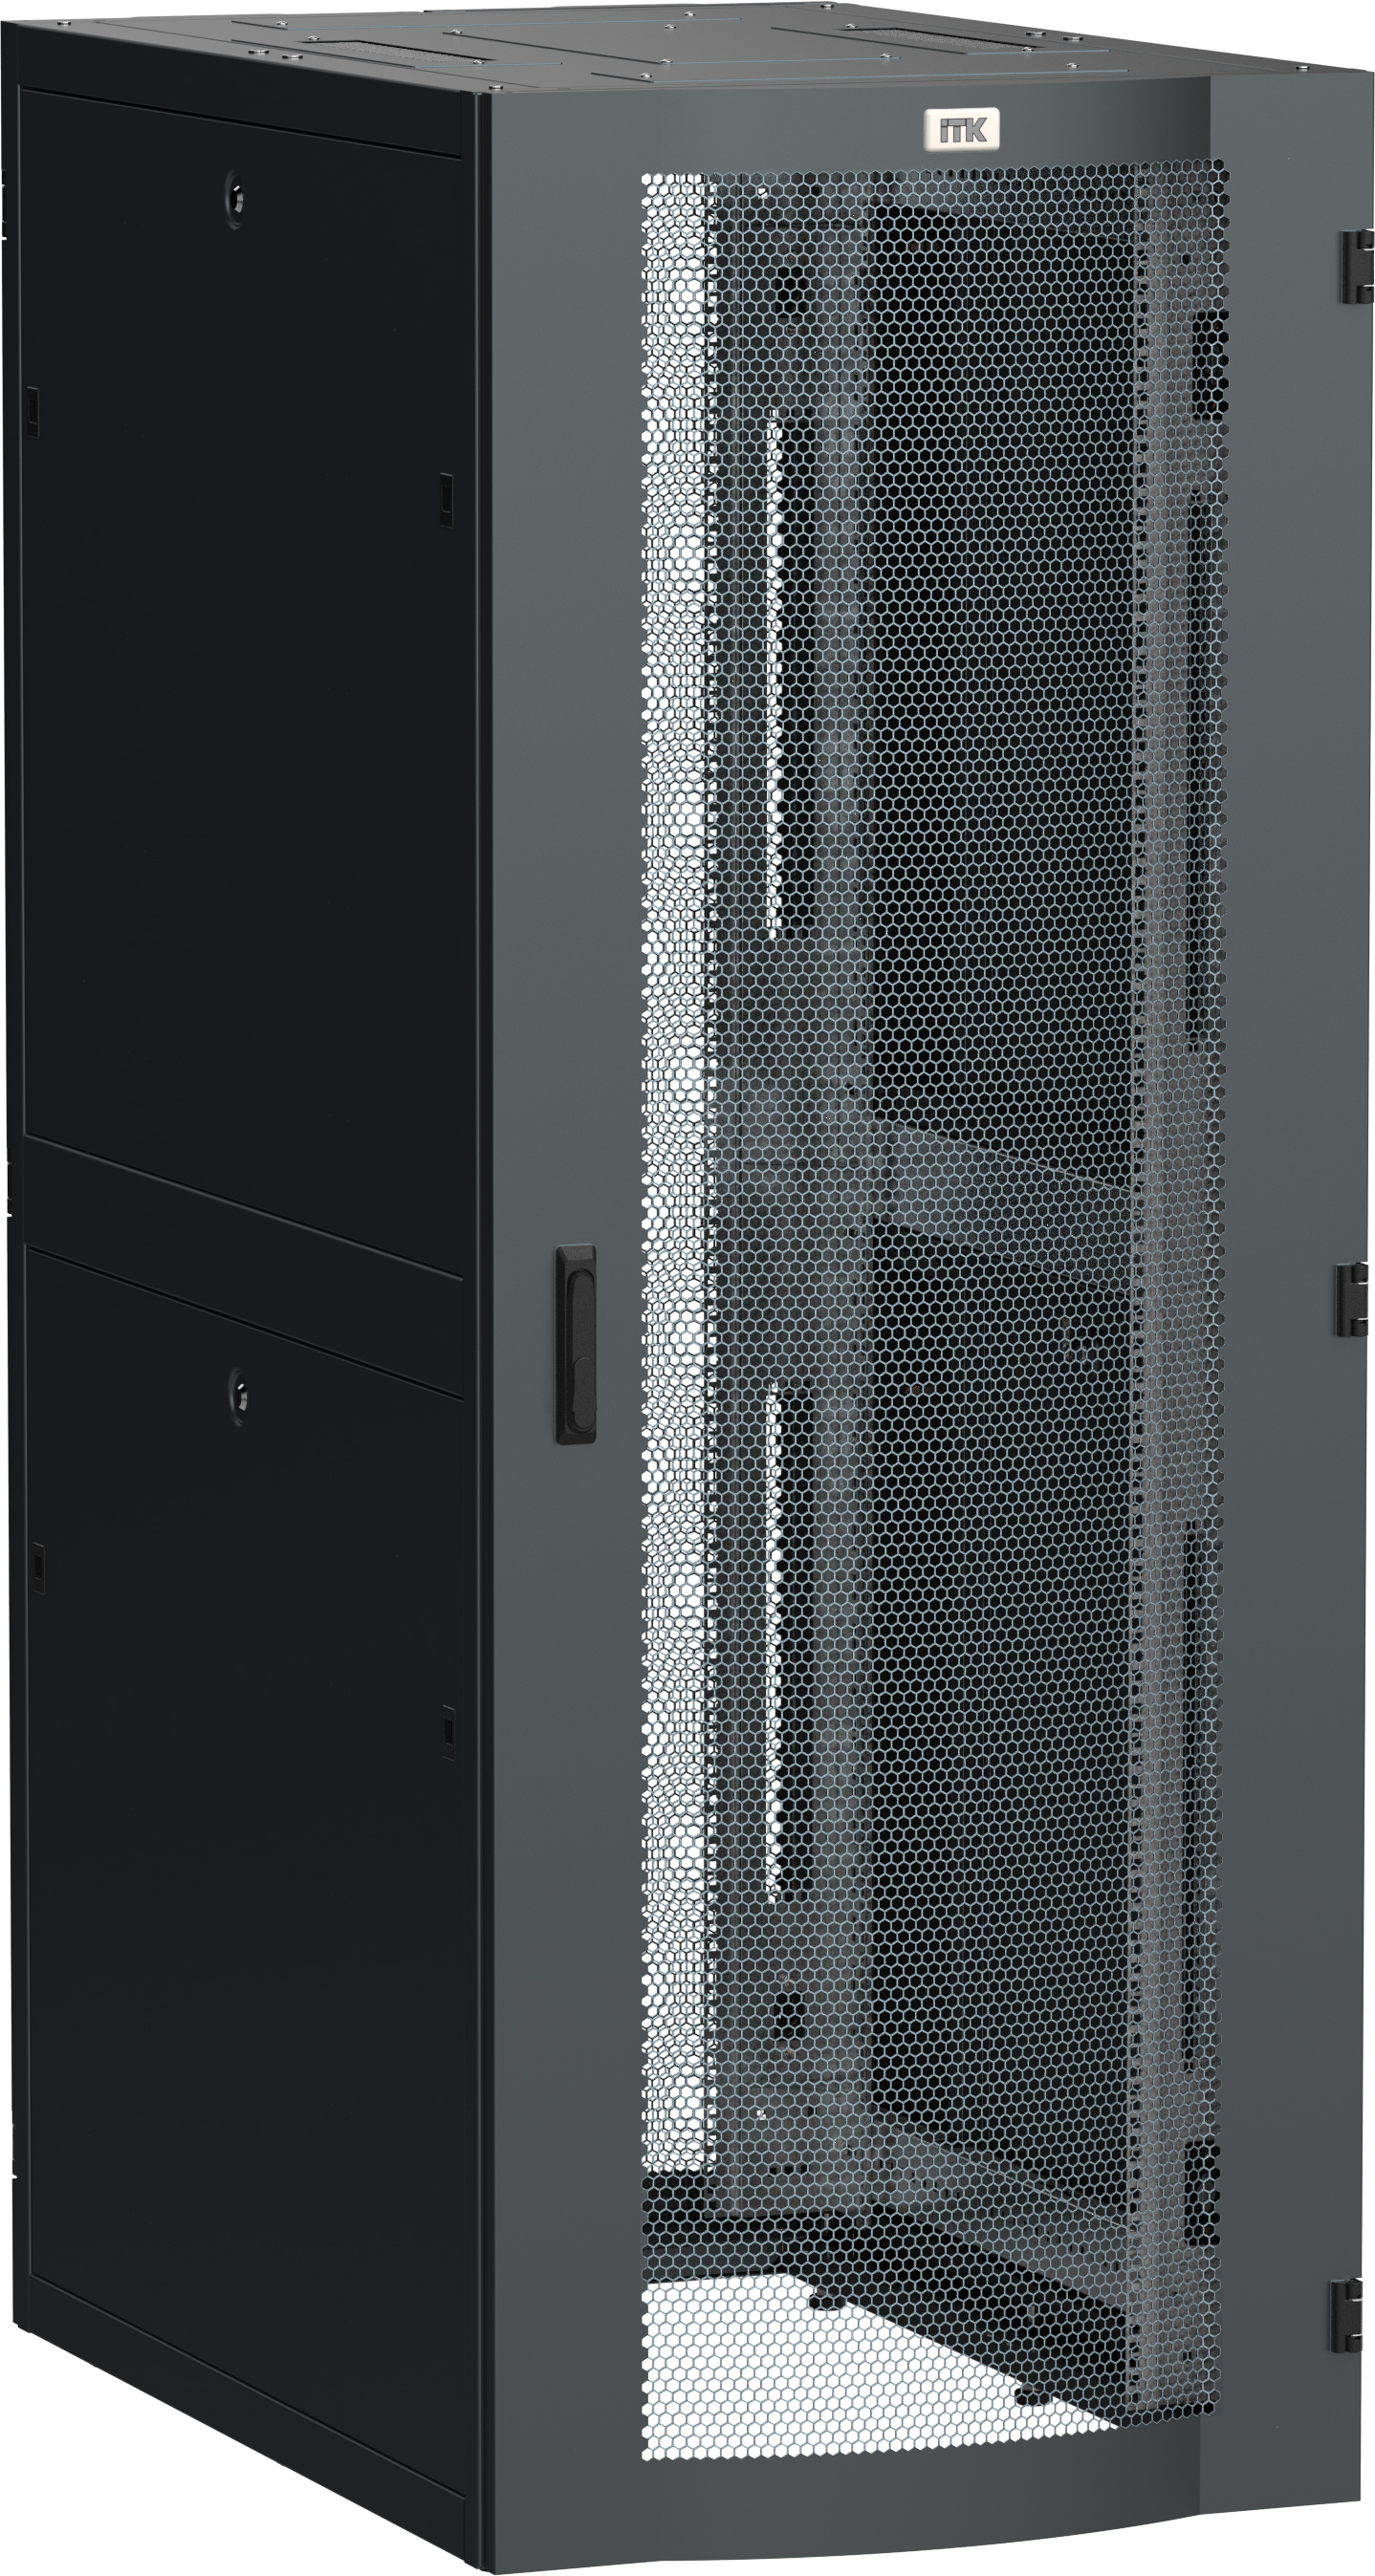 ITK LINEA S Шкаф серверный 19" 42U 750х1070мм передняя дверь двухстворчатая перфорированная задняя дверь перфорированная черный RAL 9005